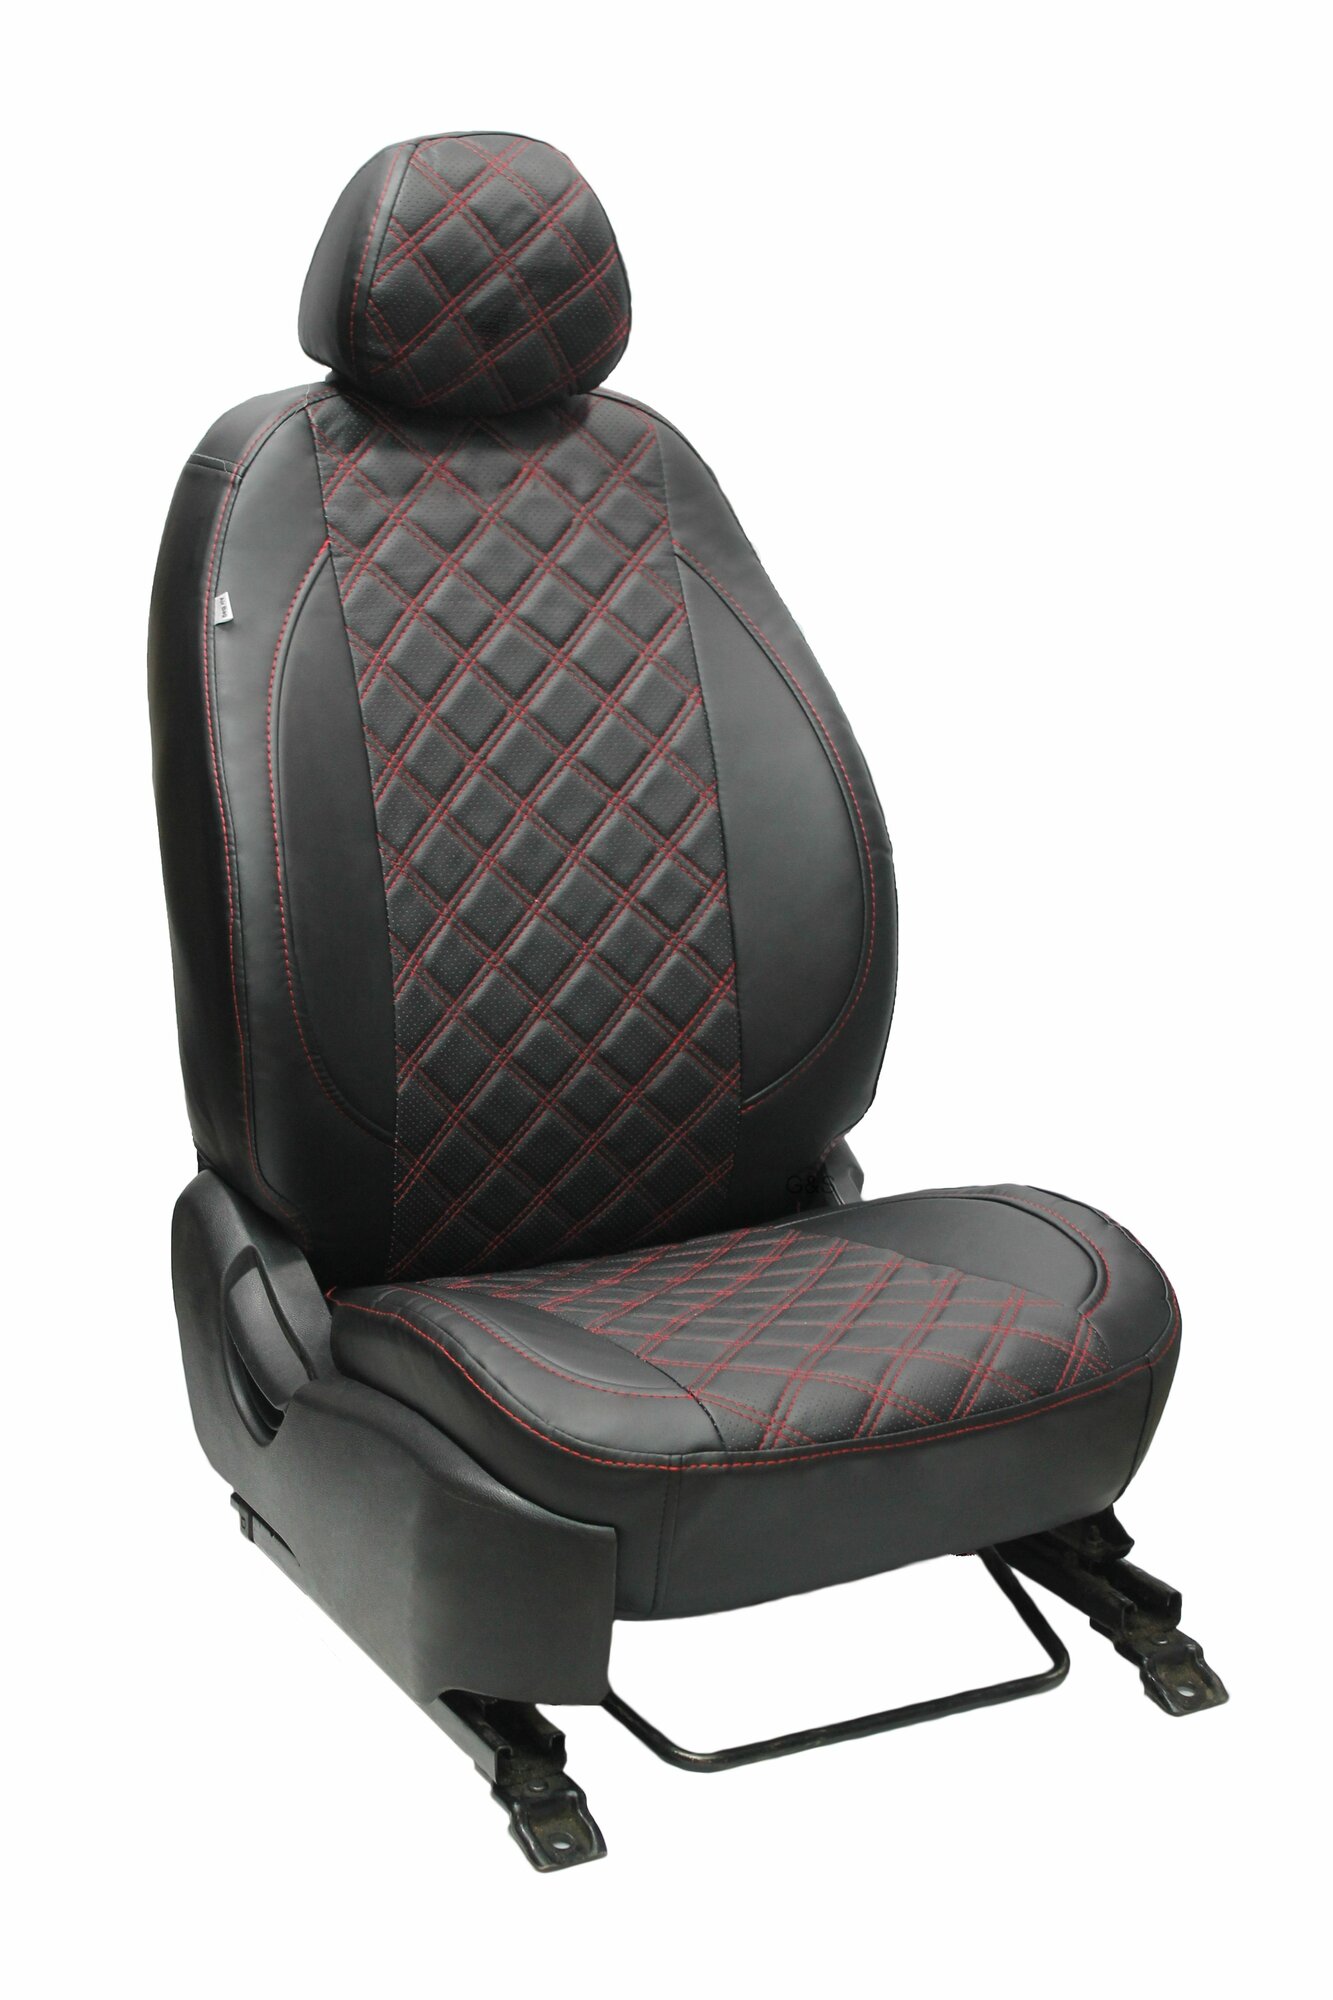 Чехлы для автомобильных сидений комплект Premium на лада приора (2007-2013)/ВАЗ 2110 седан, авточехлы модельные экокожа, черный ромб красная нить